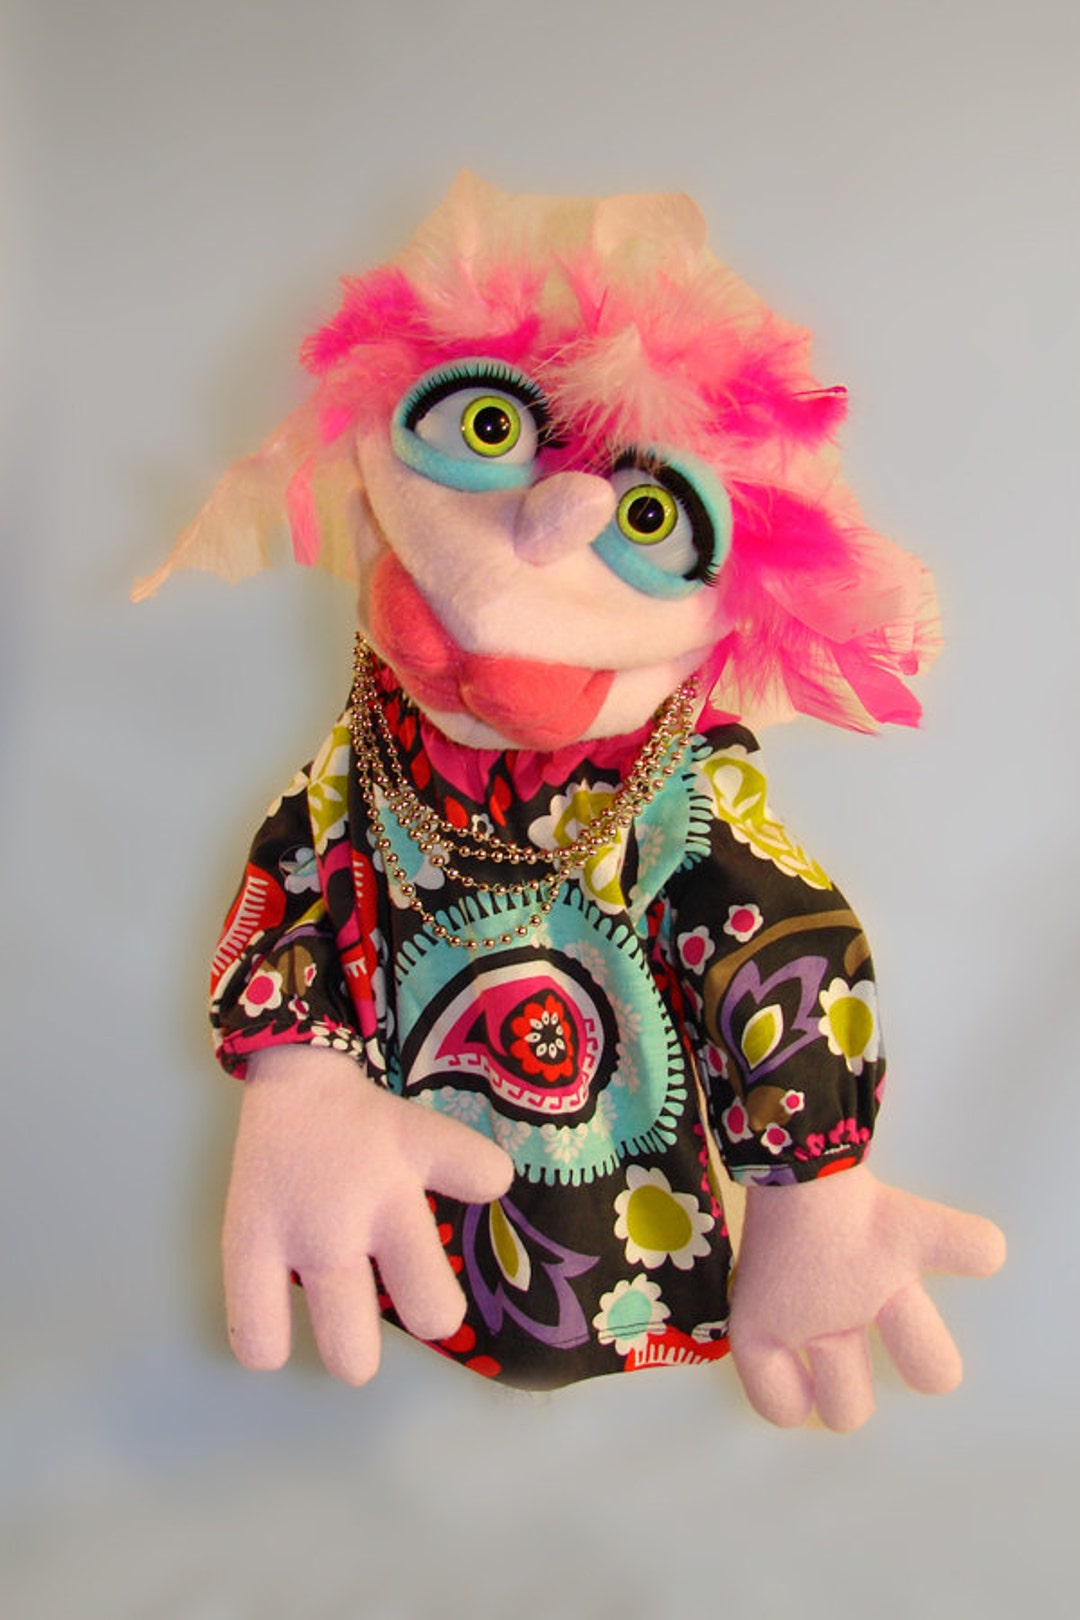 Marionnette ventriloque fille douce, marionnette drôle, marionnette à tige  de style professionnel -  Canada